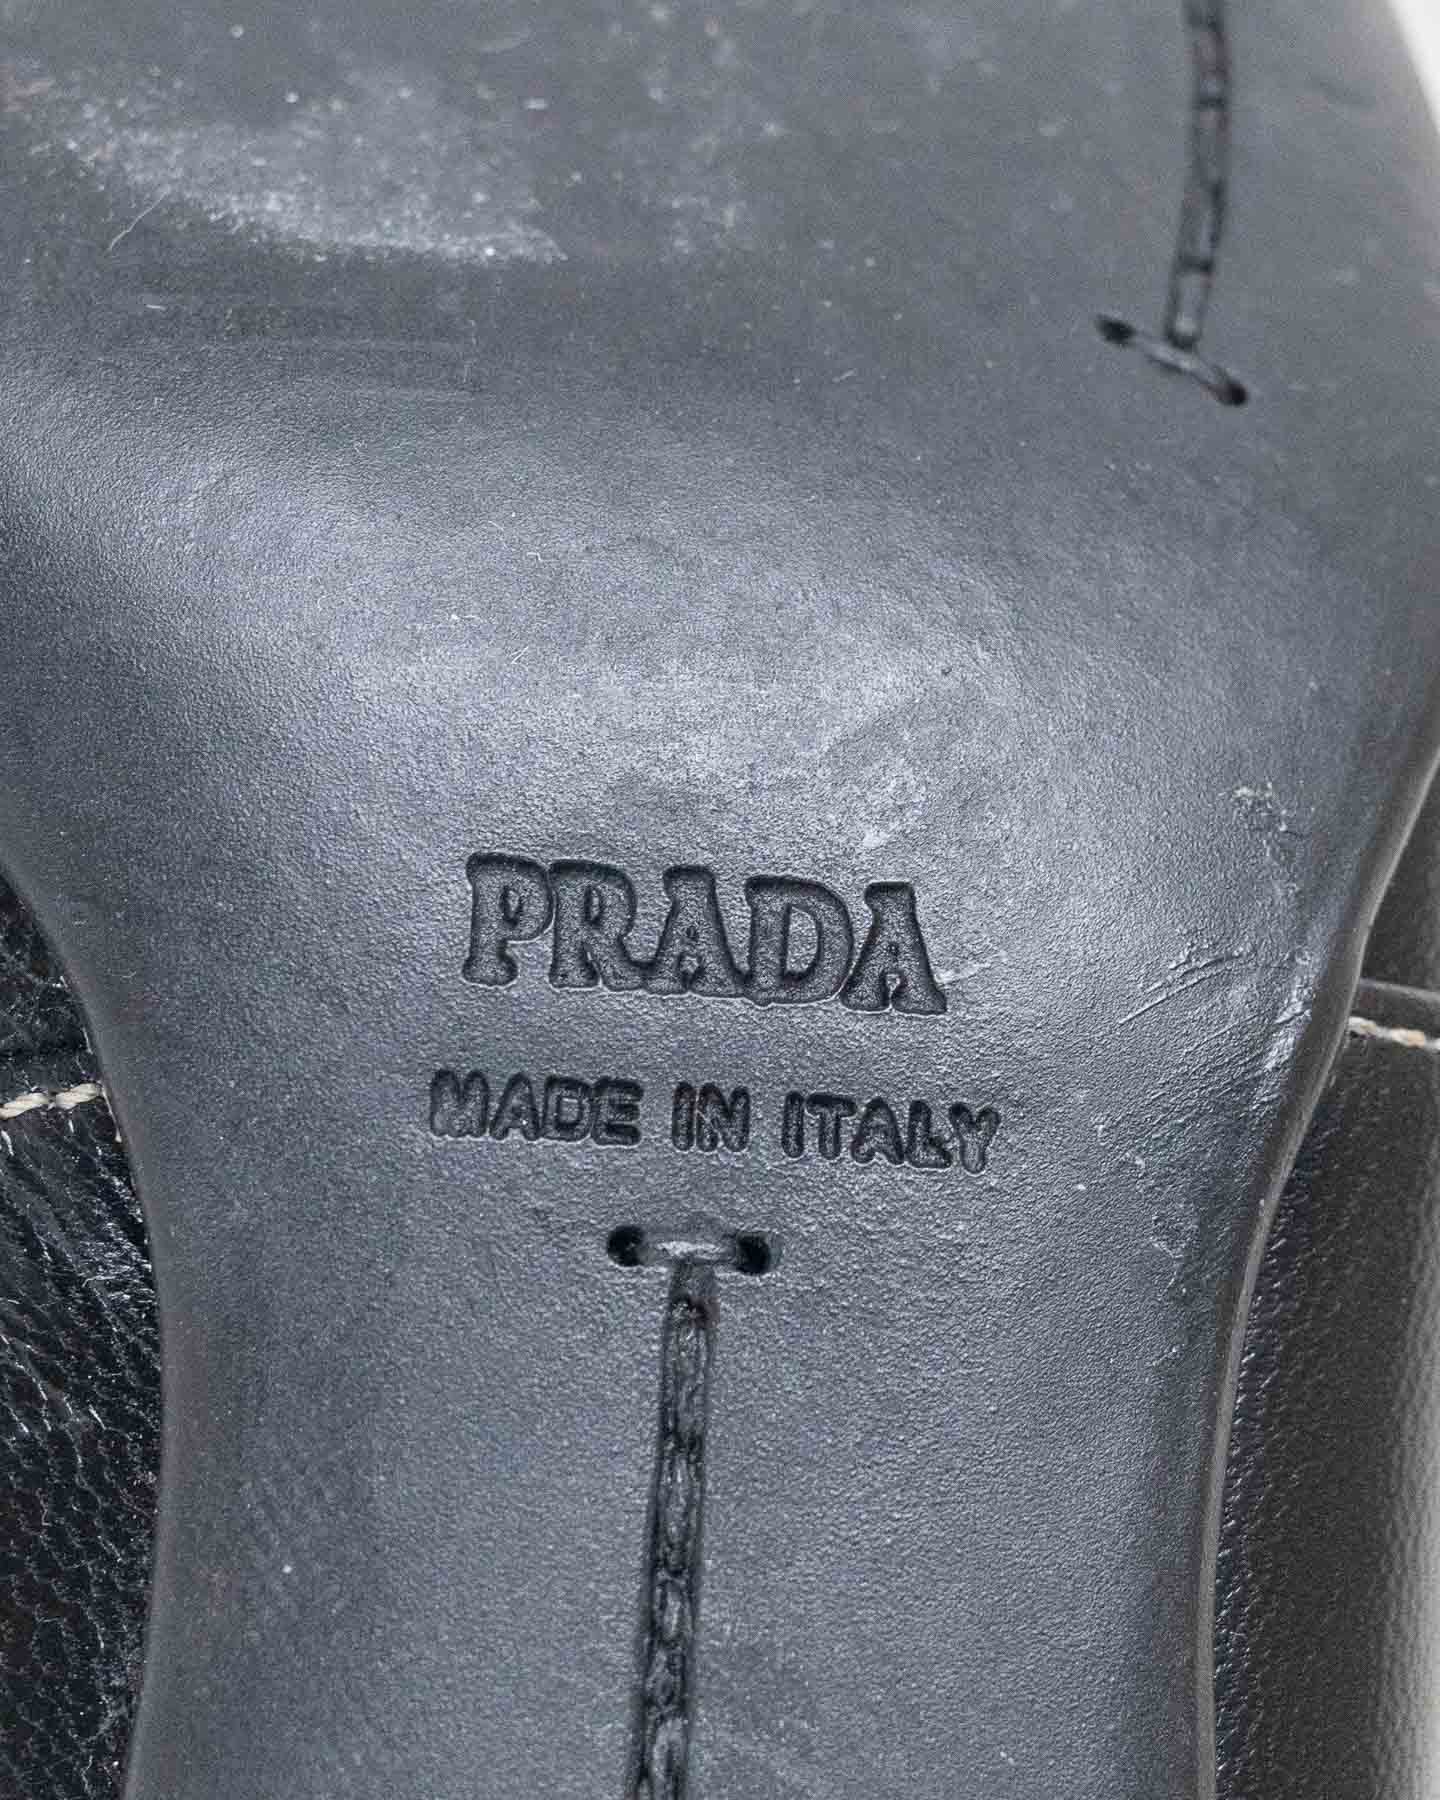 Escarpins noirs Prada avec détails métalliques - pointure 38 